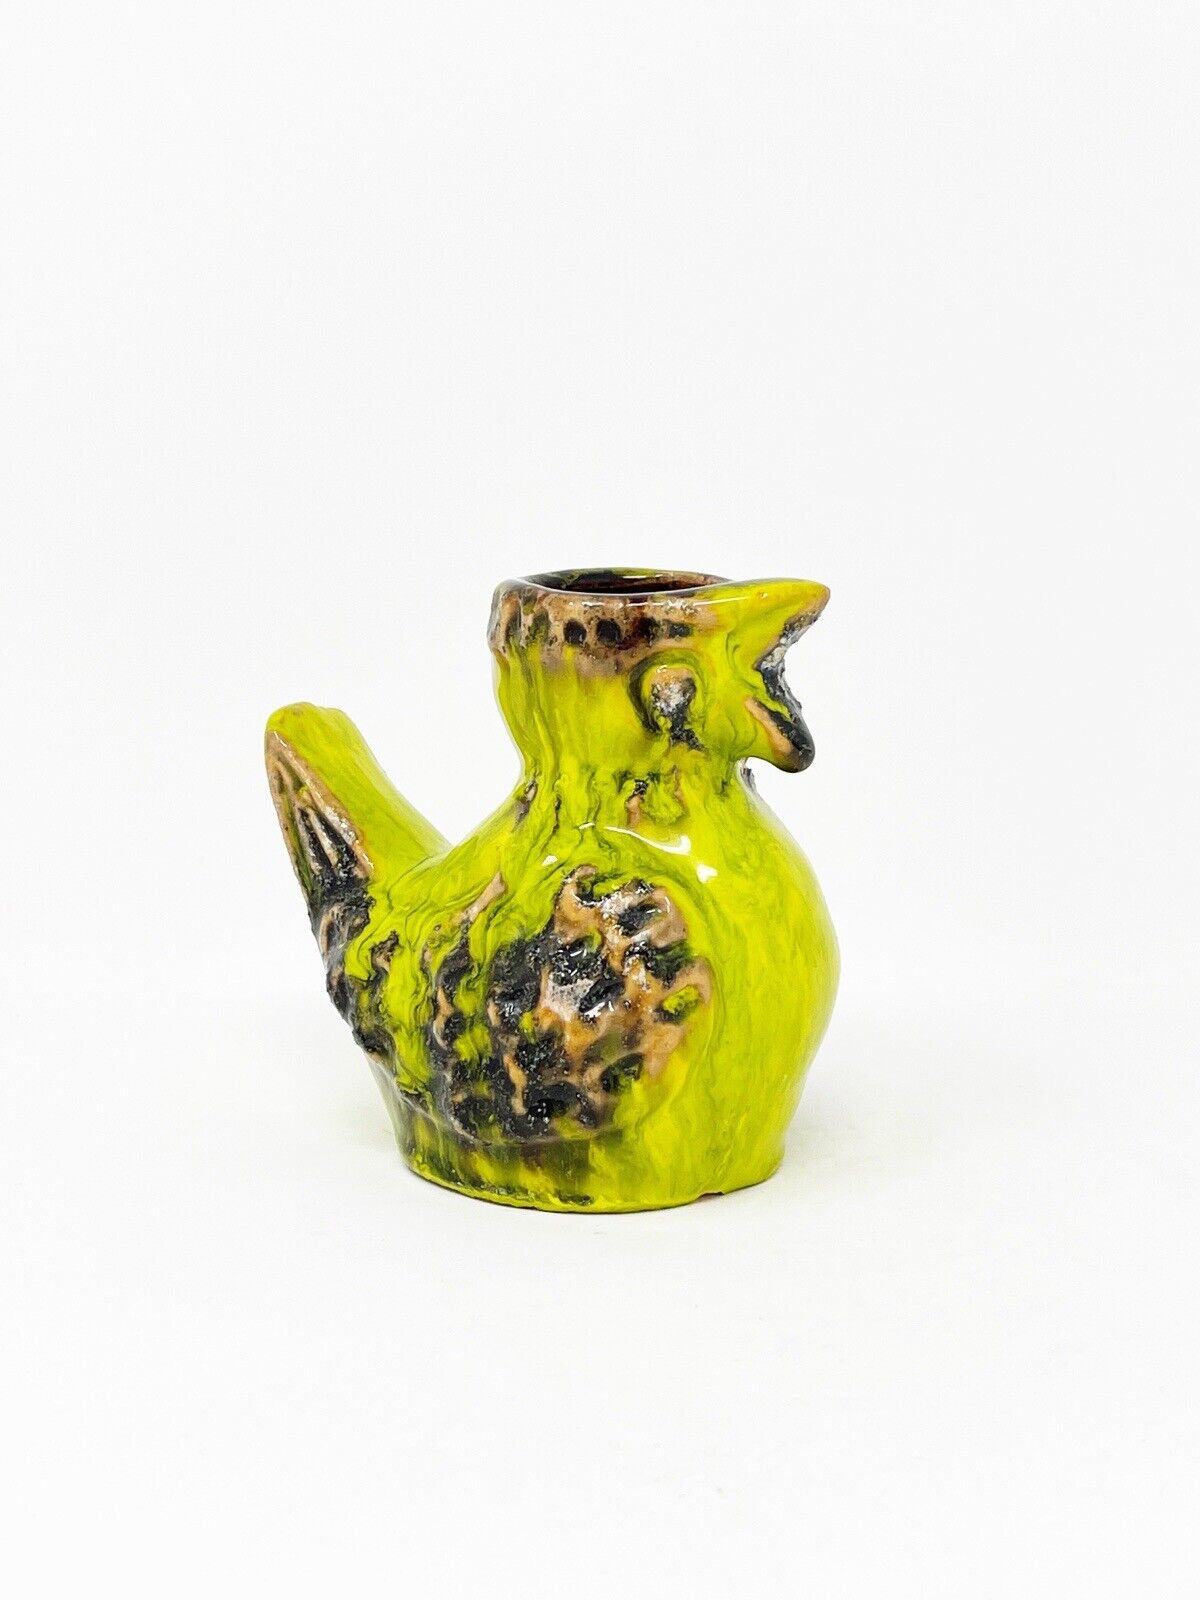 Jasba Keramik Pottery Bird Vase Yellow Green Drip Glaze Vintage West Germany